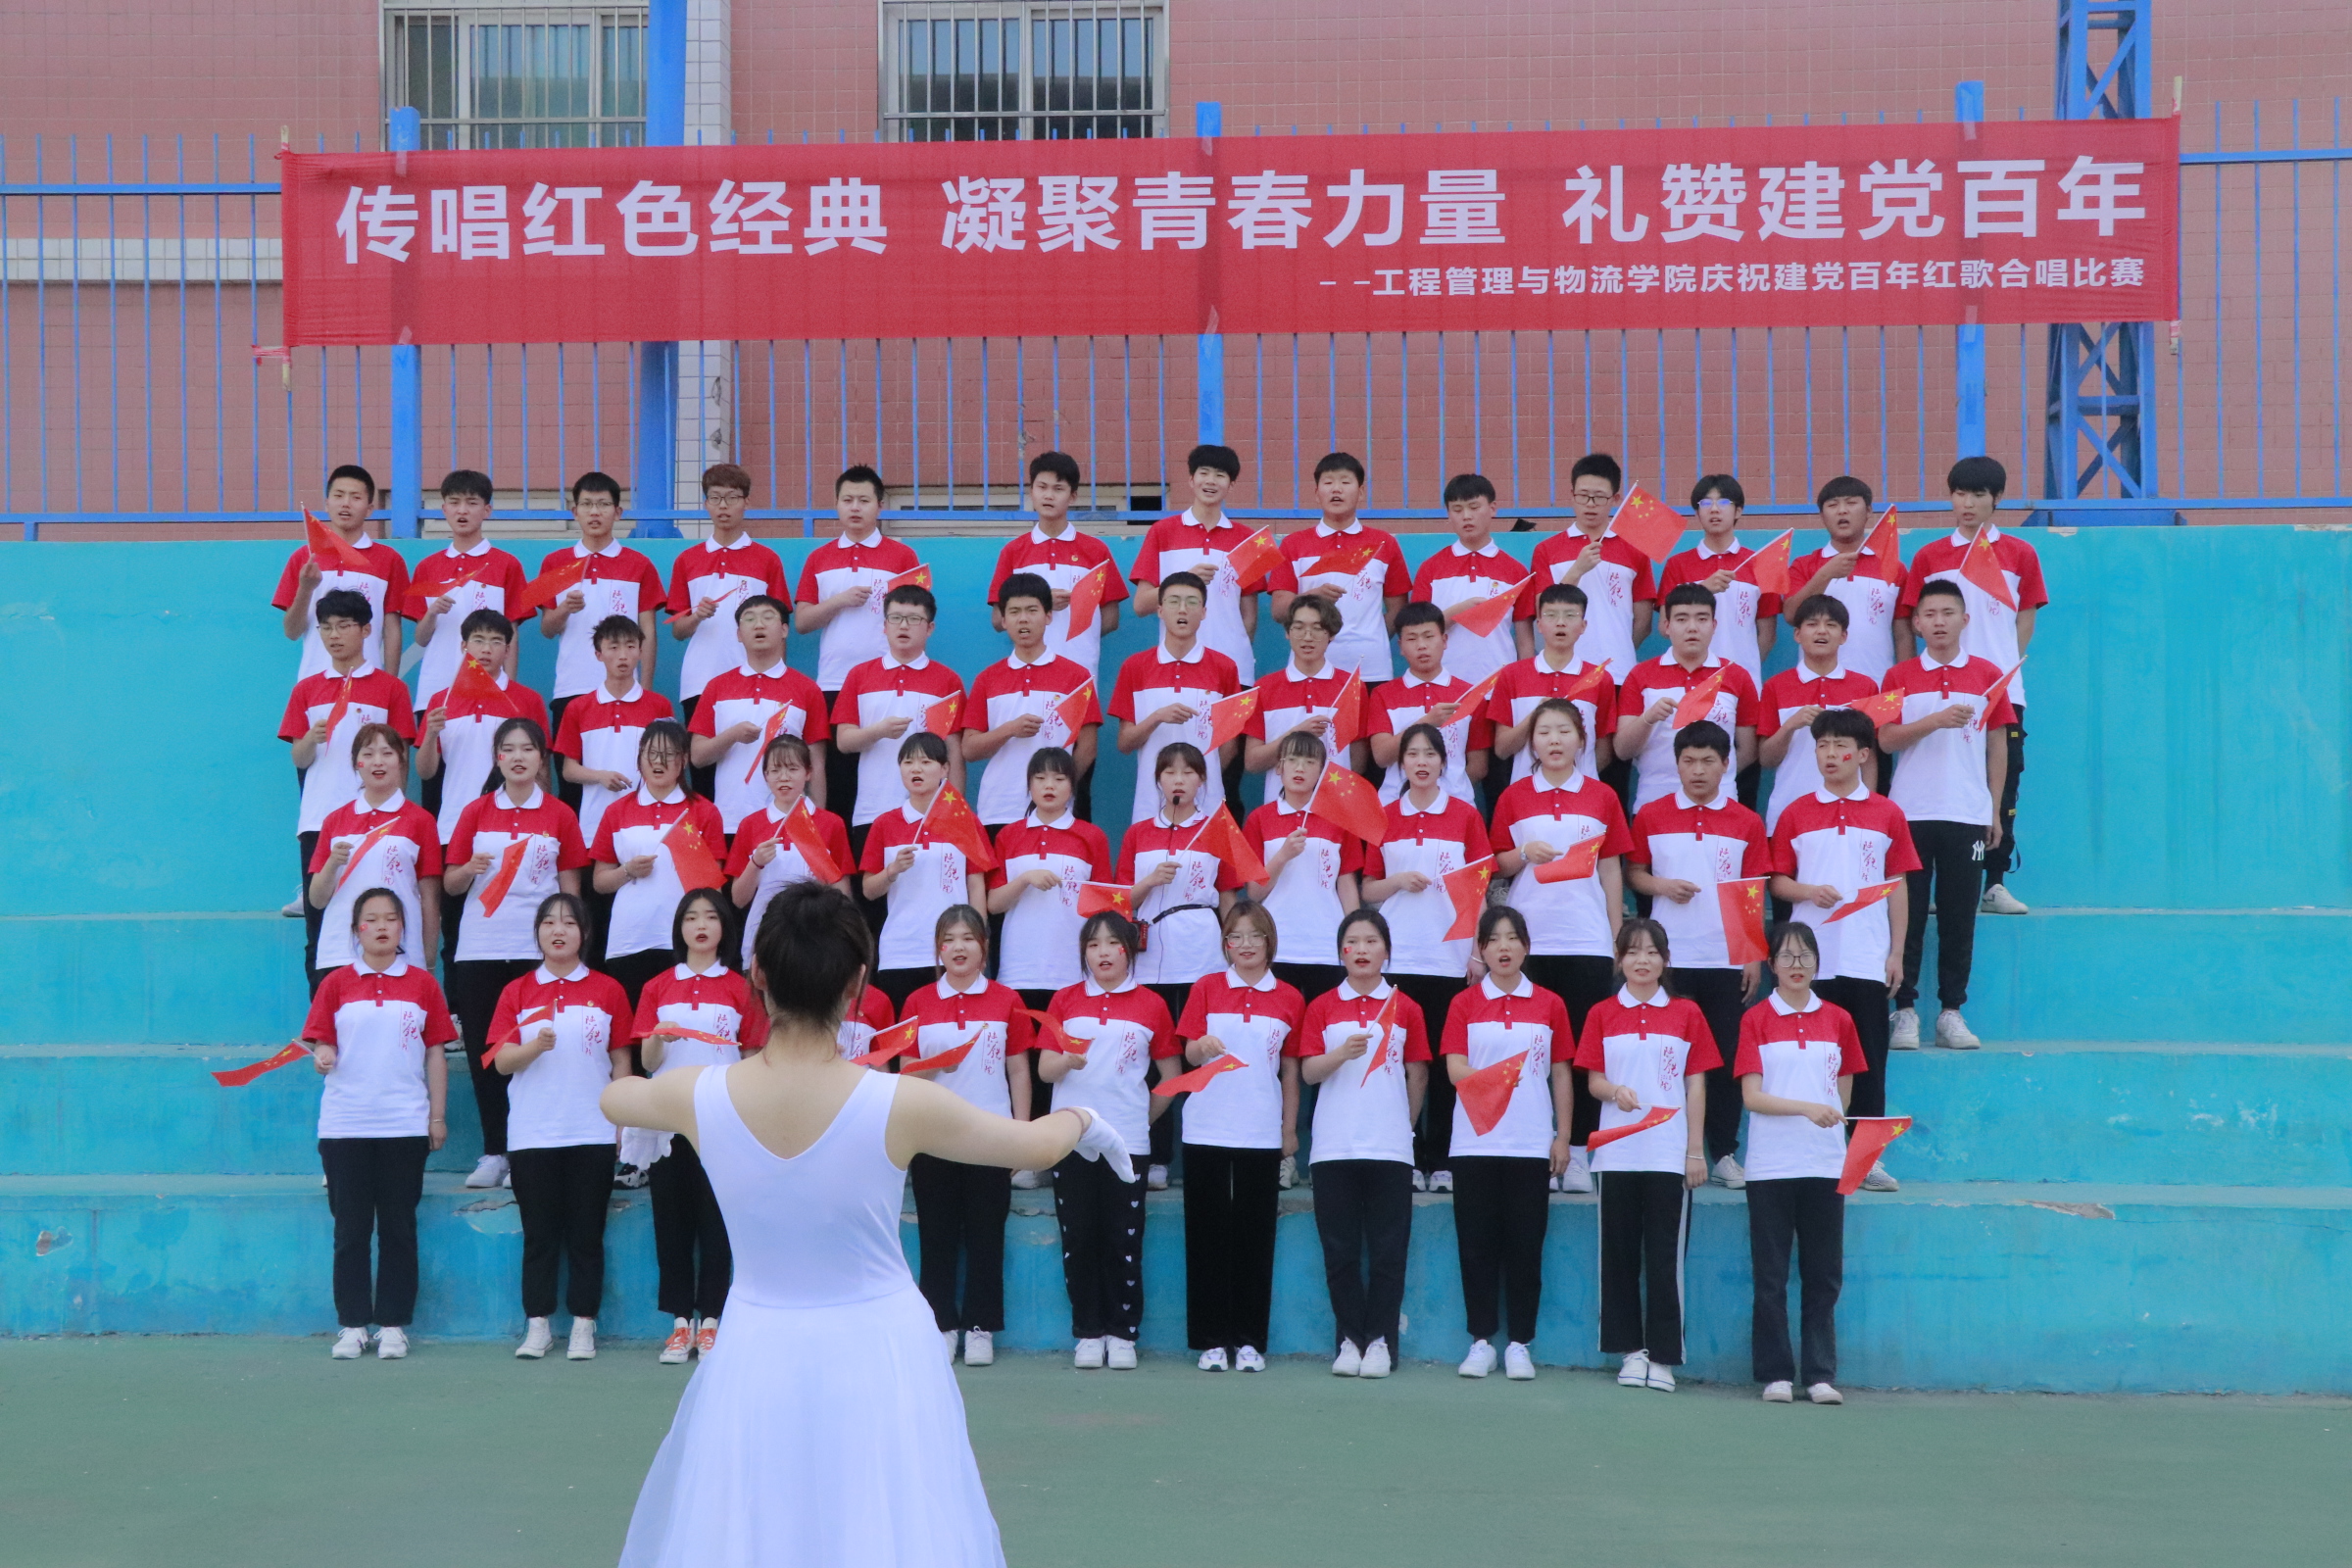 陕铁院管理学院举办“传唱红色经典 凝聚青春力量 礼赞建党百年”红歌比赛